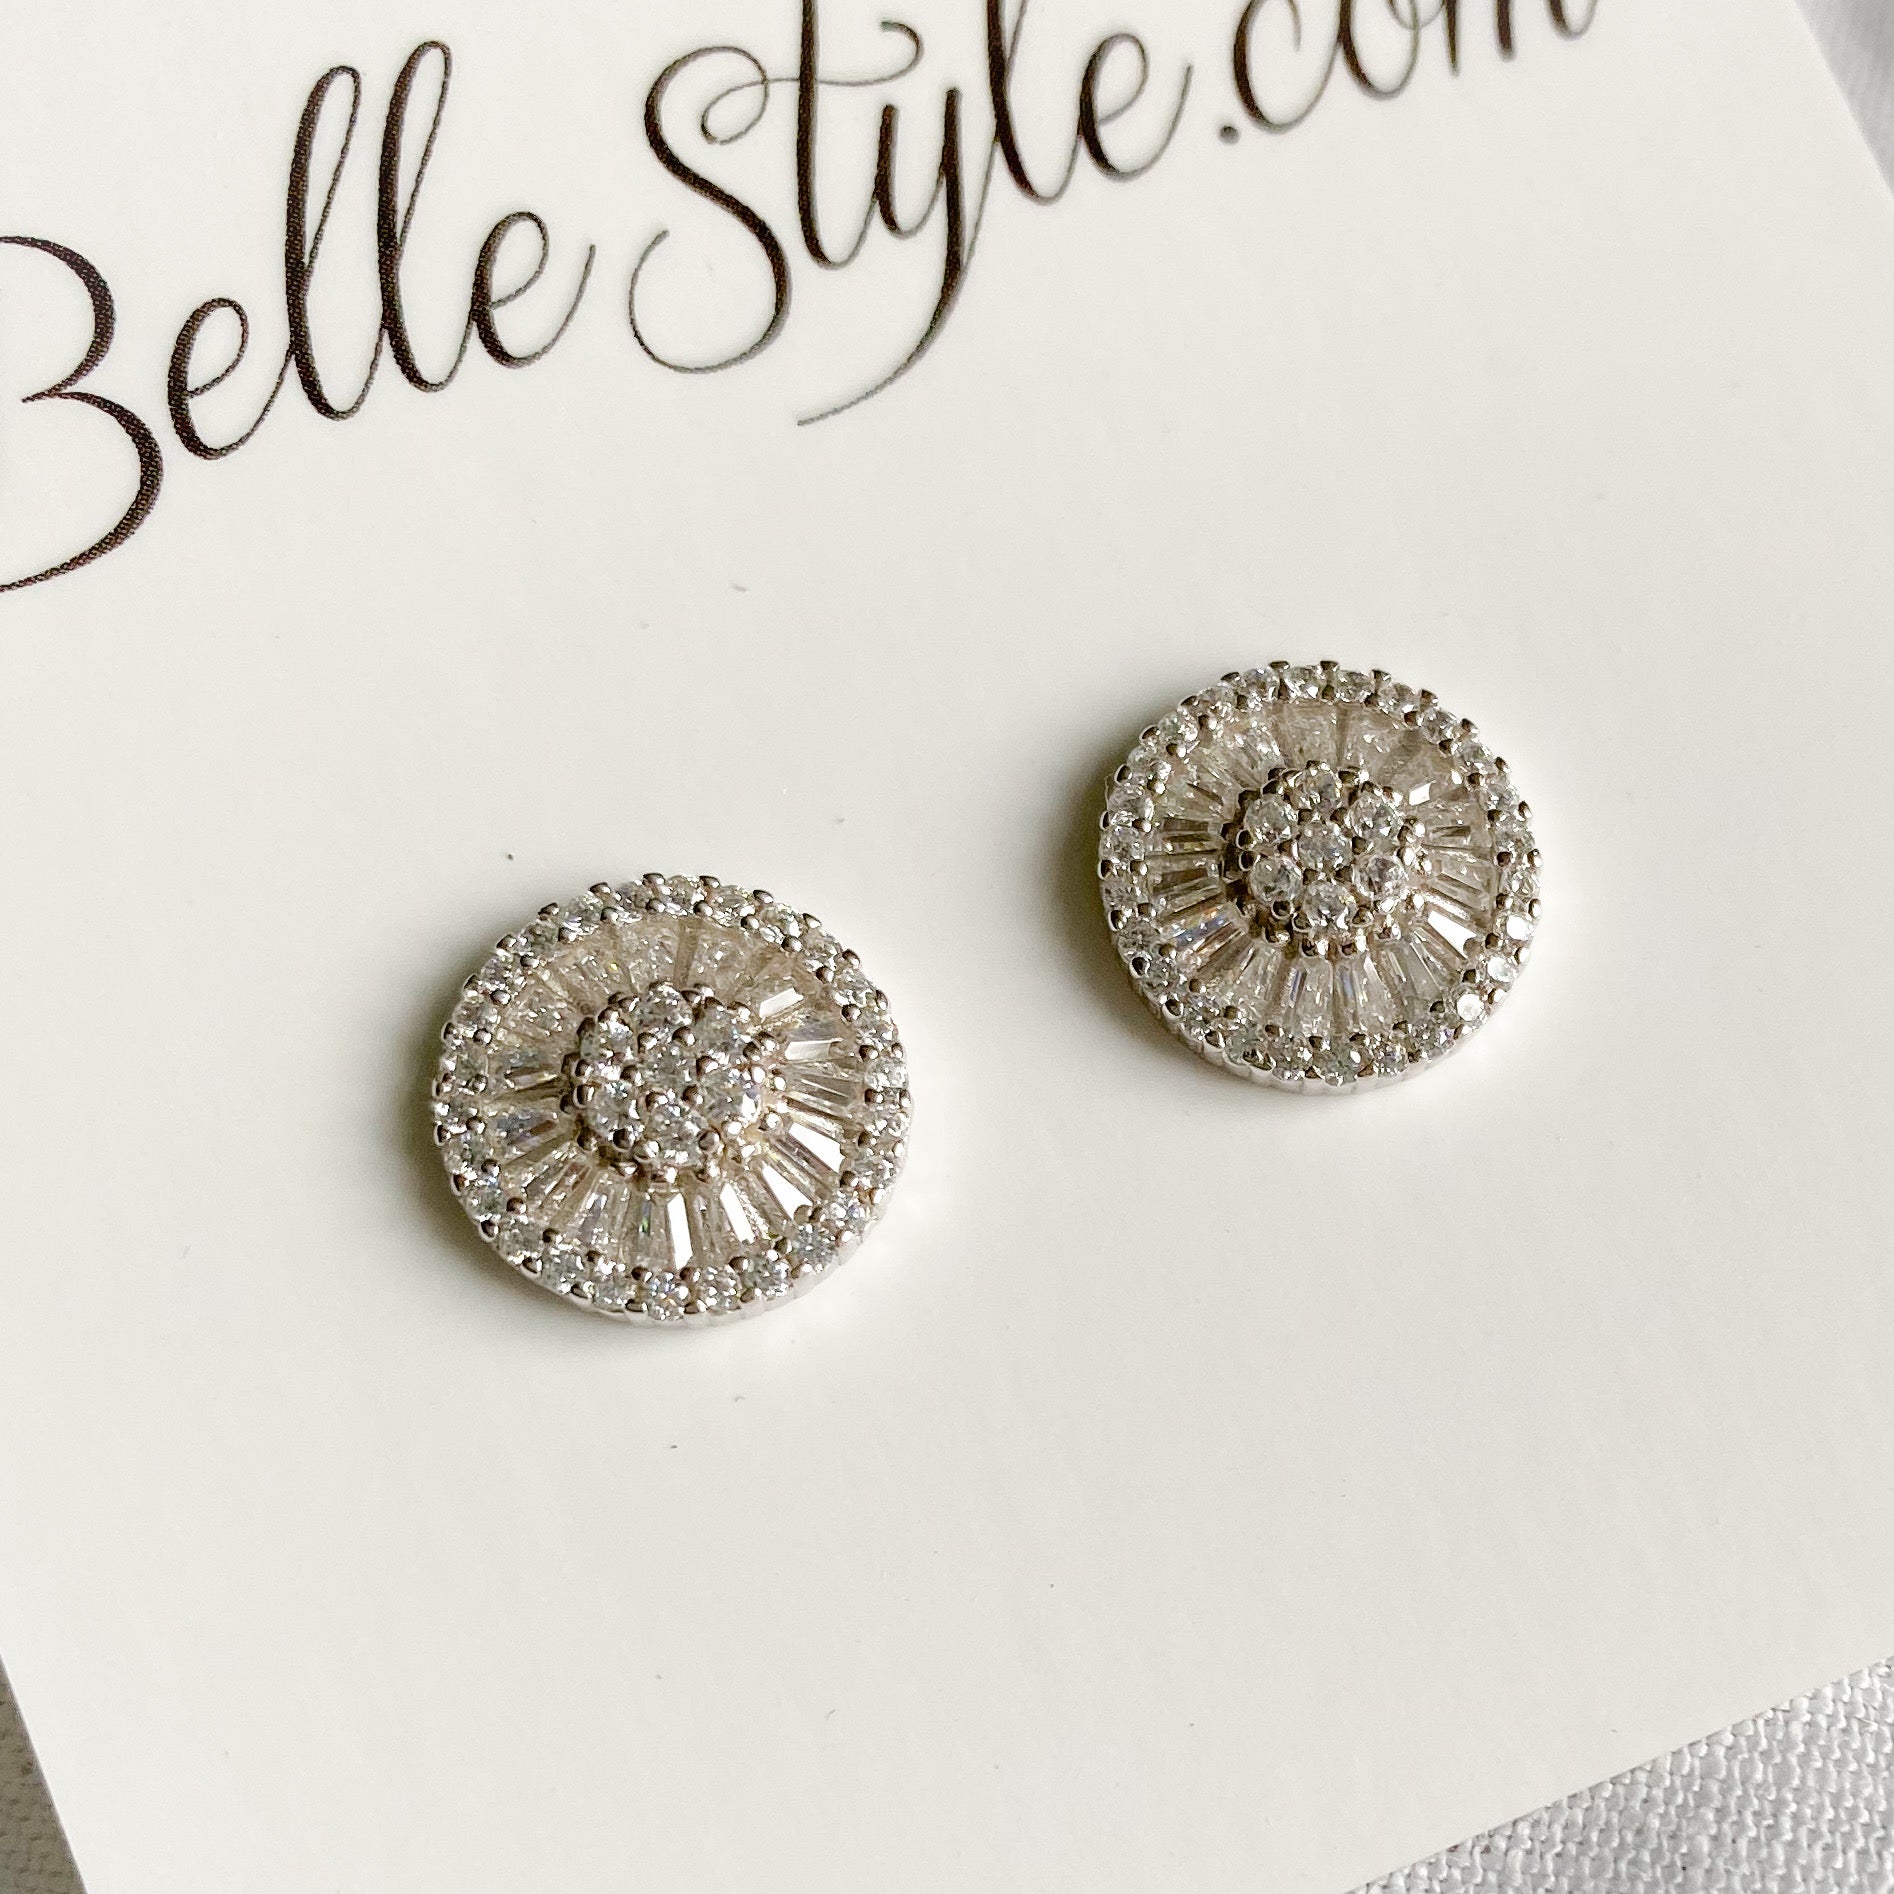 Baguette Circle Crystal Earrings - BelleStyle